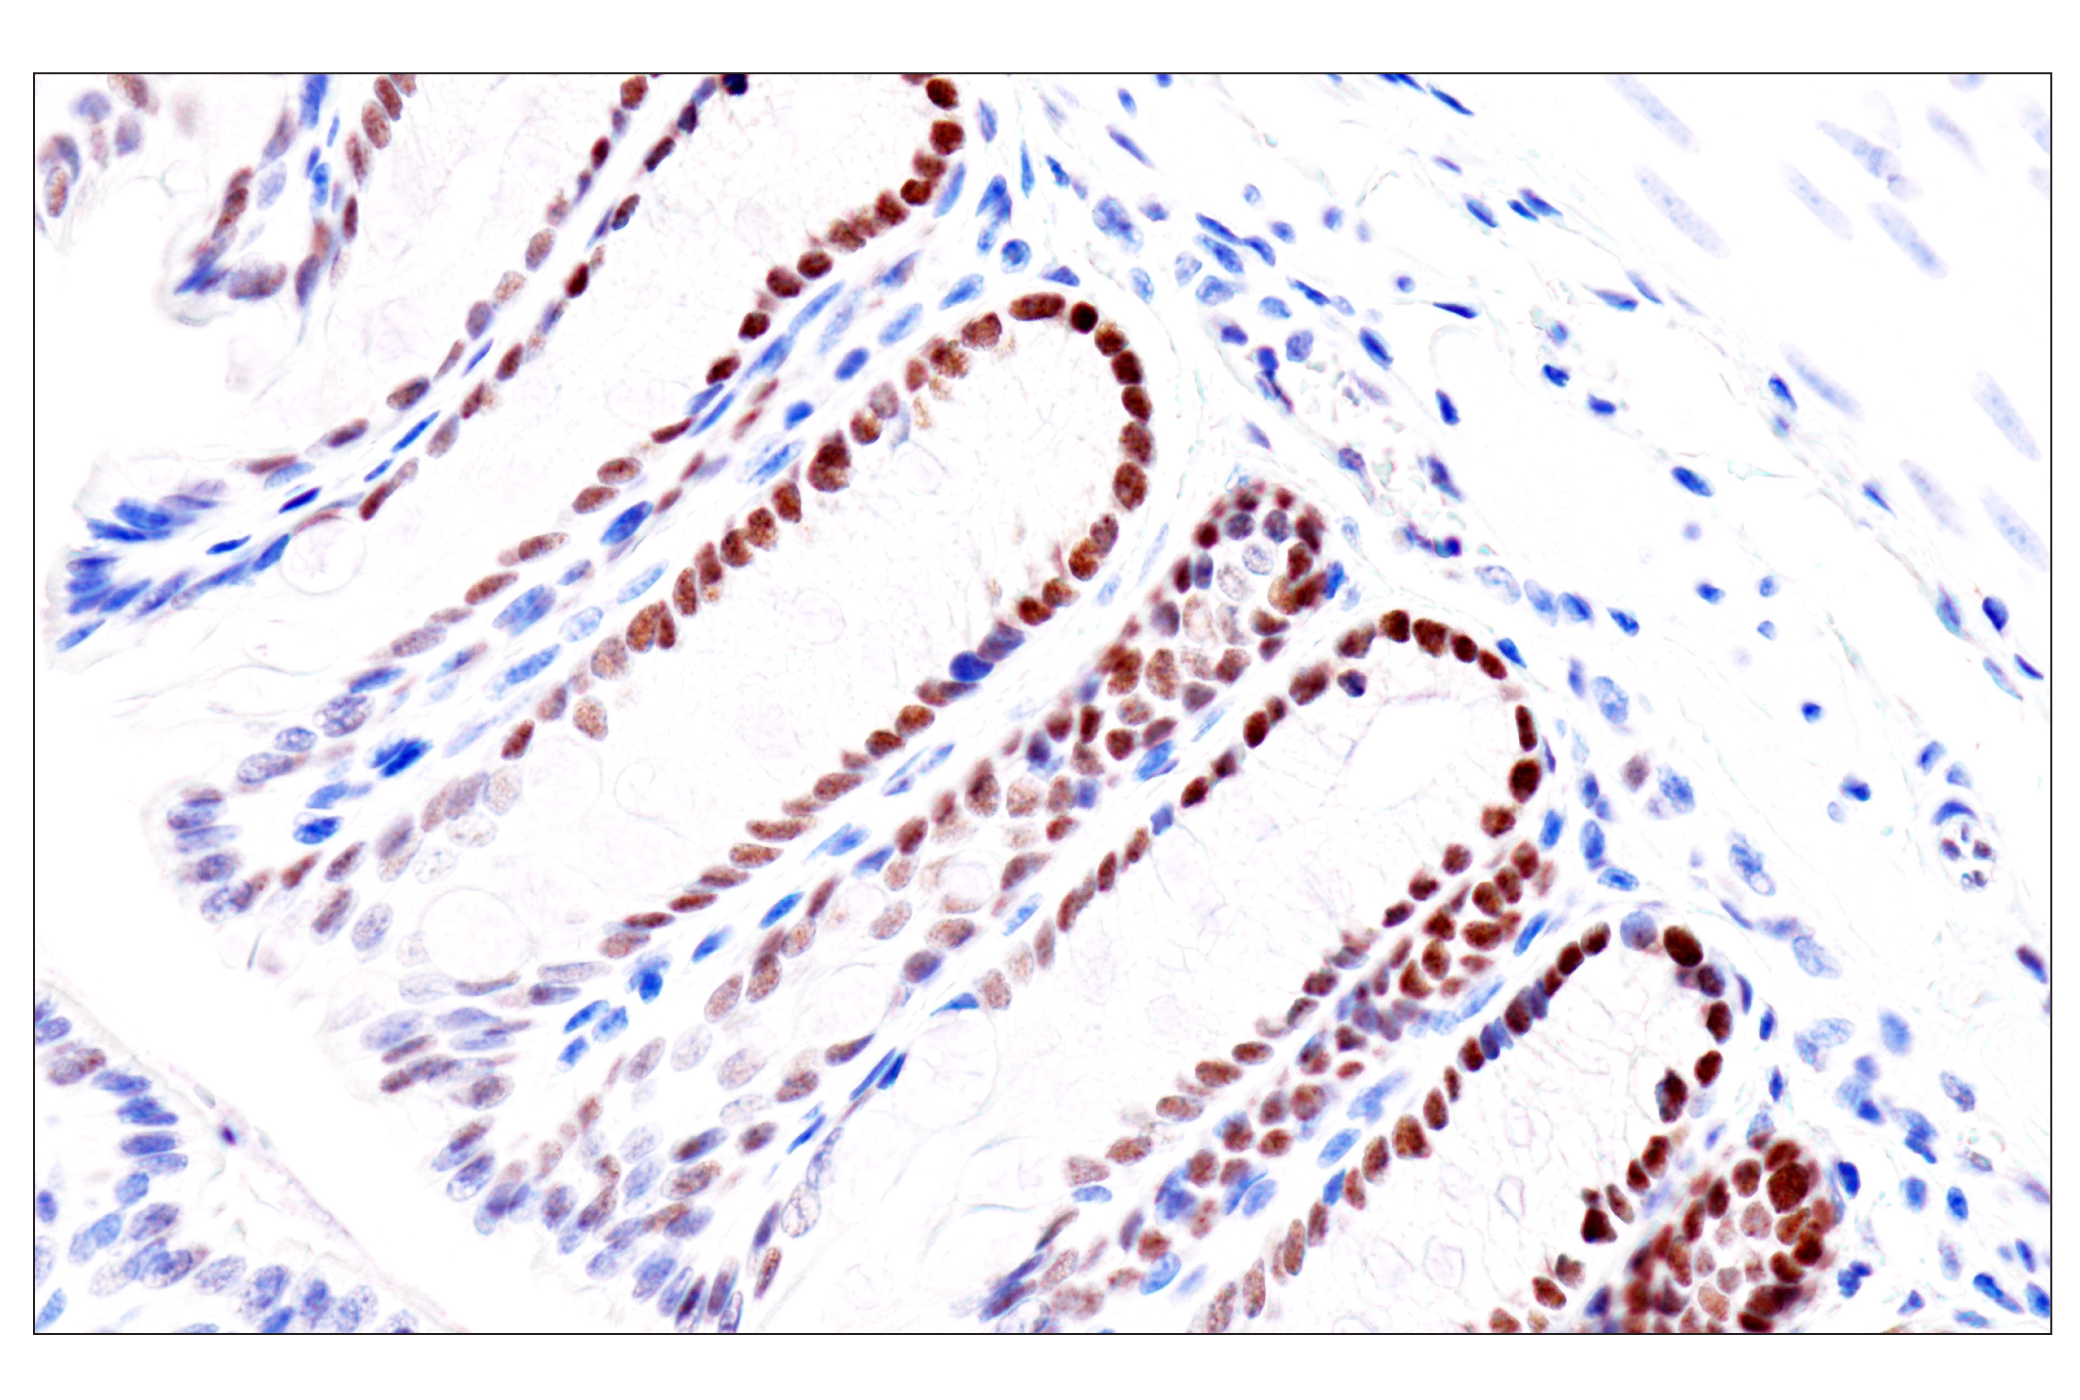  Image 60: GATA Transcription Factor Antibody Sampler Kit